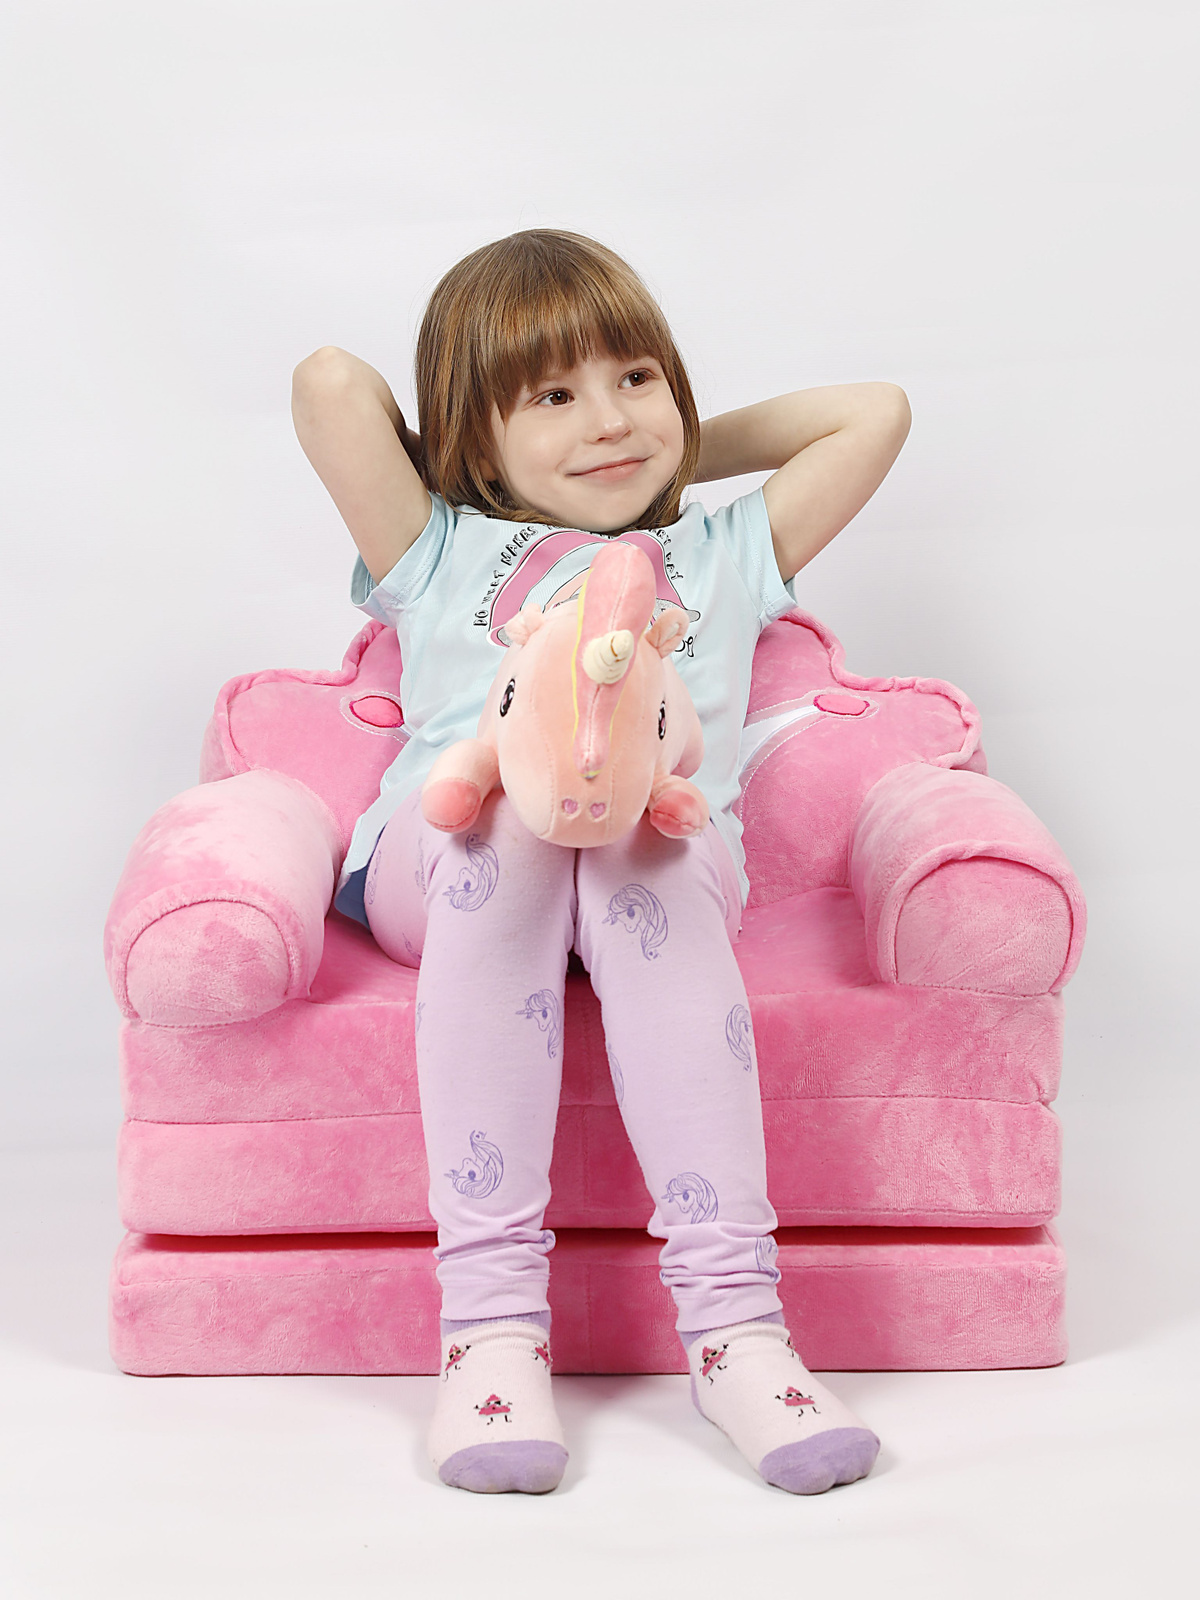 Раскладной диван для детей не имеет острых углов, изготовлен из гипоаллергенных материалов.